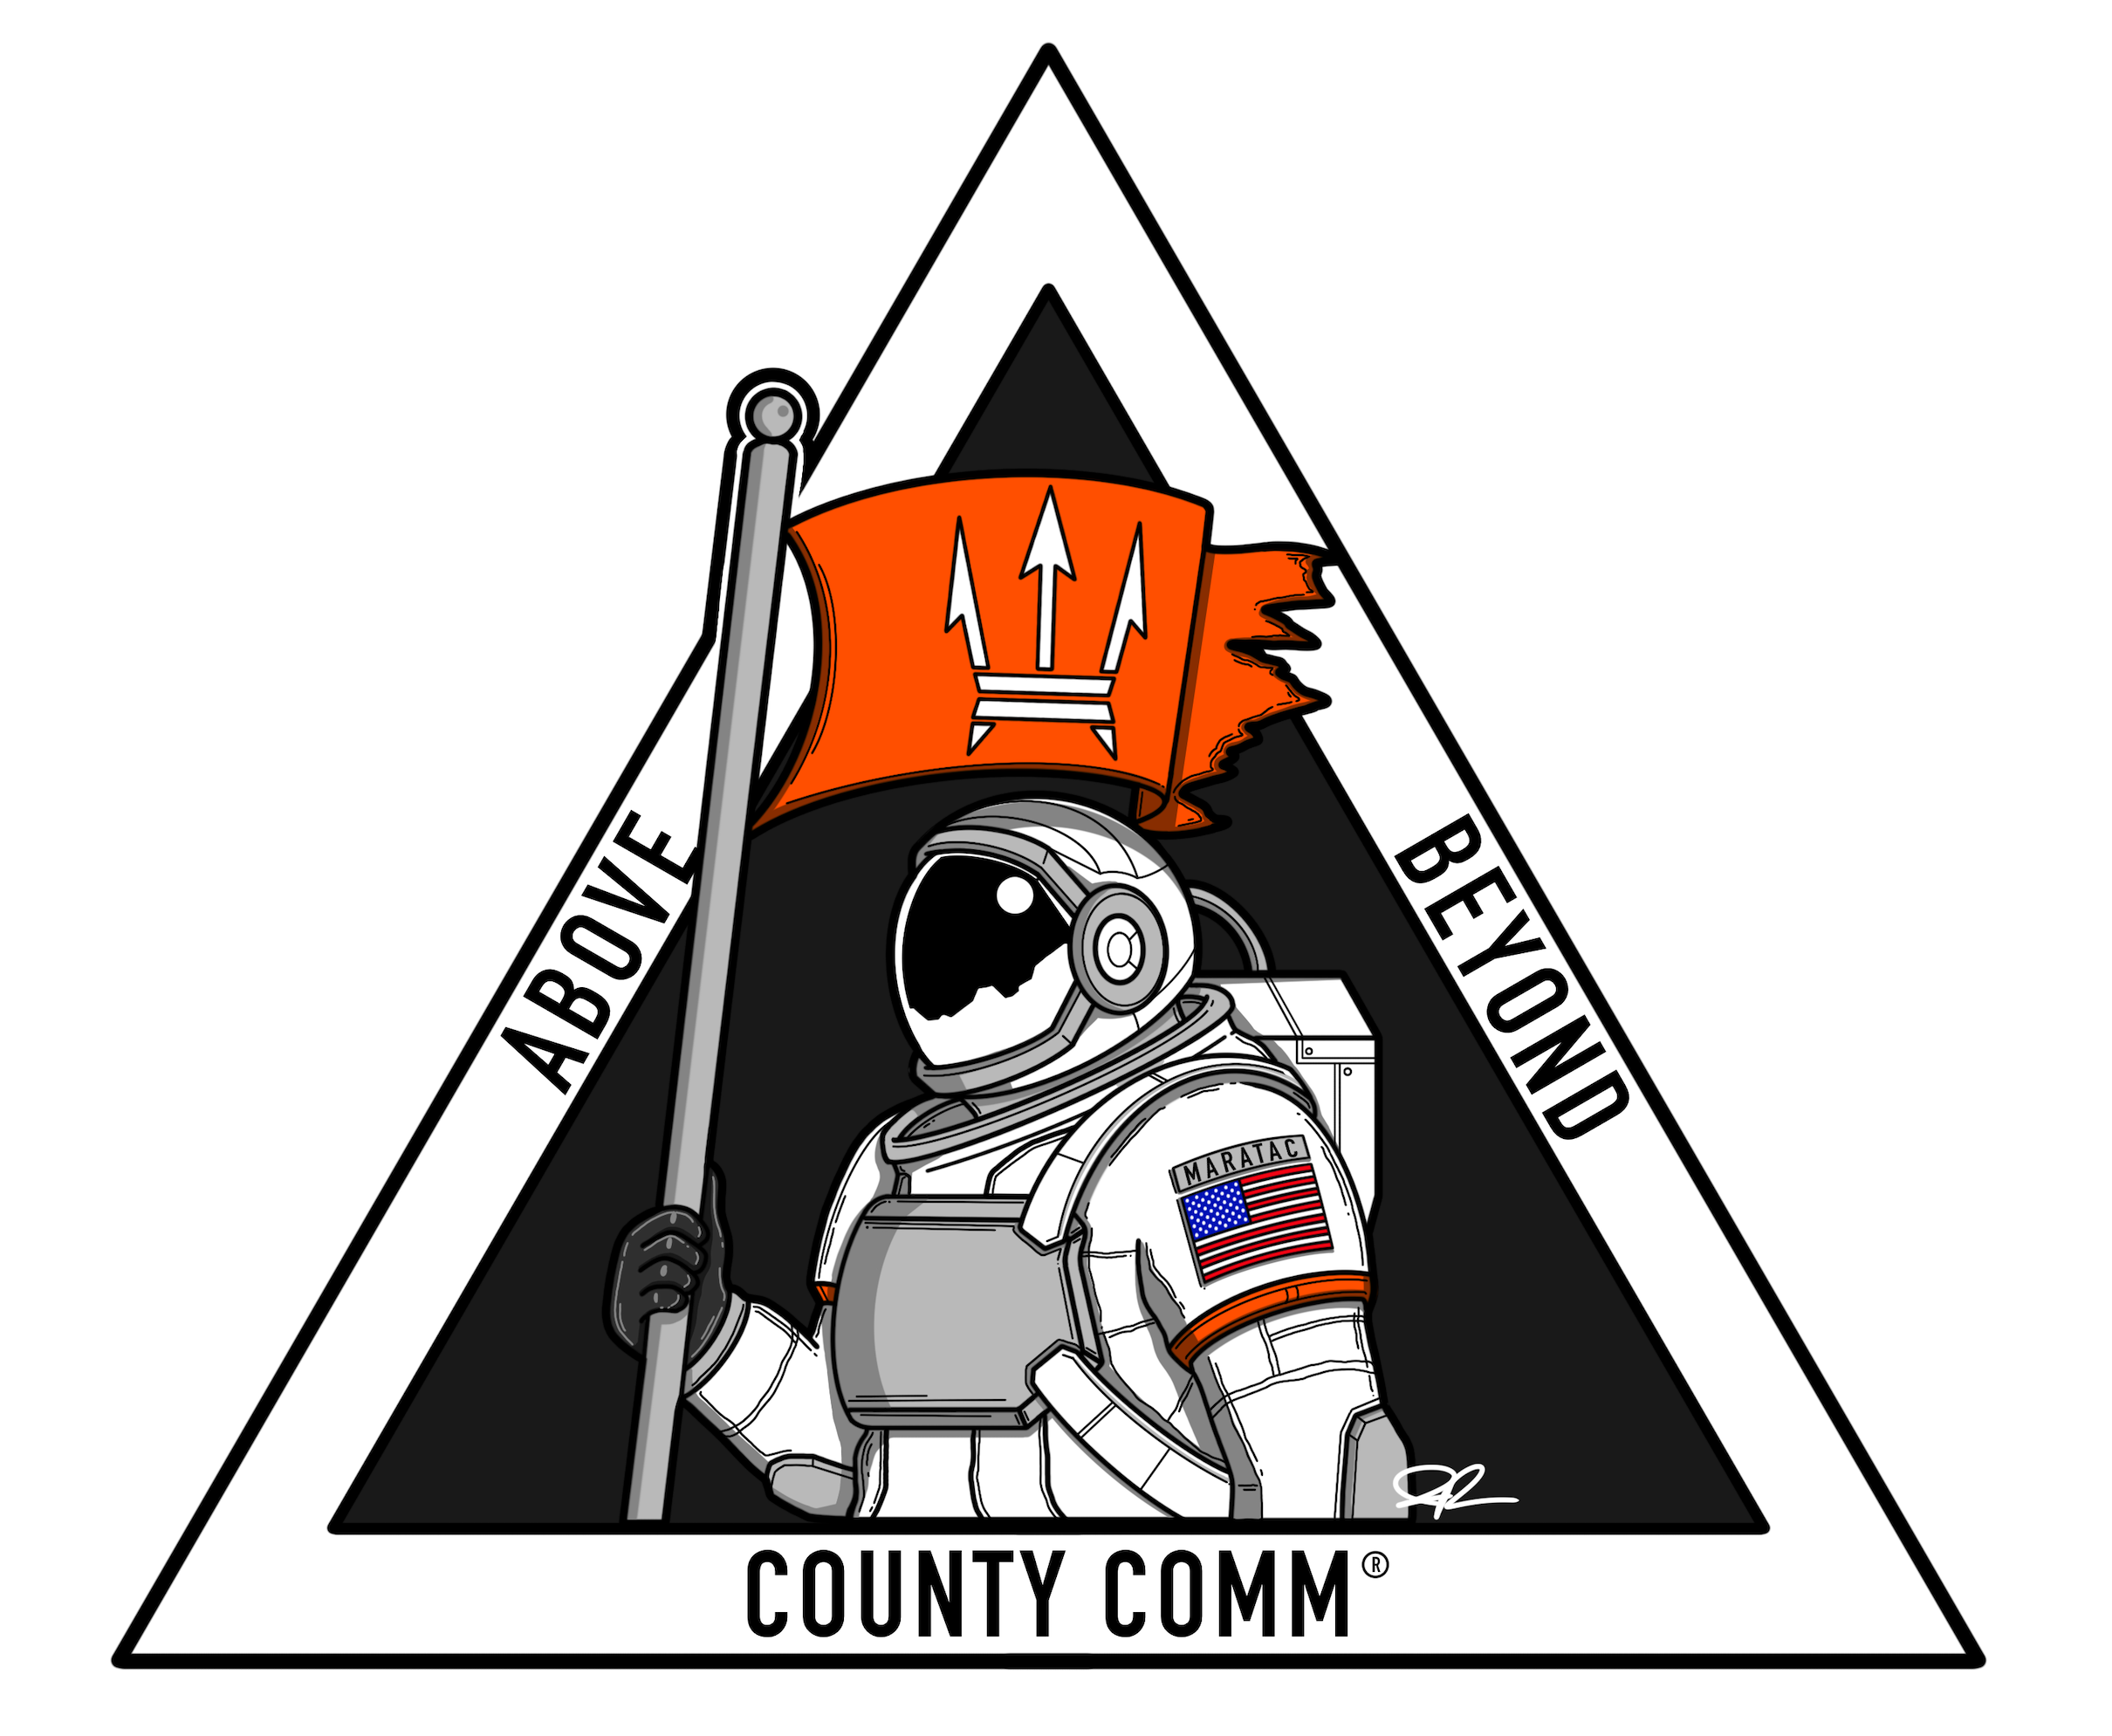 (c) Countycomm.com